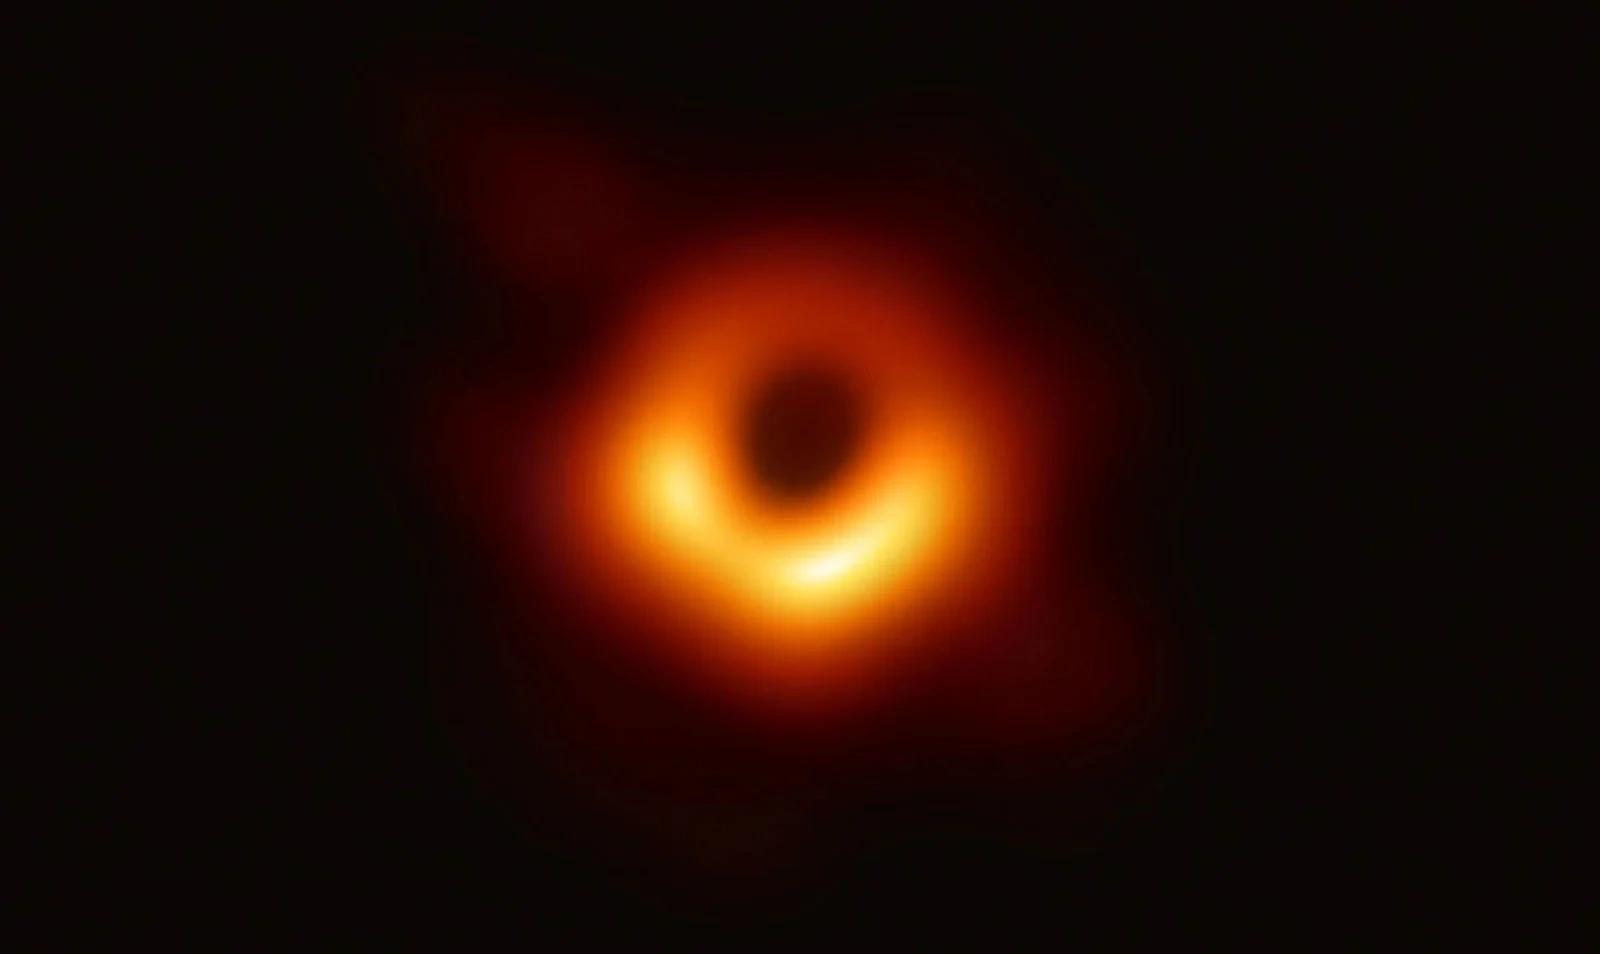 科学家证实有史以来第一个拍摄到的M87星系中心黑洞正在旋转